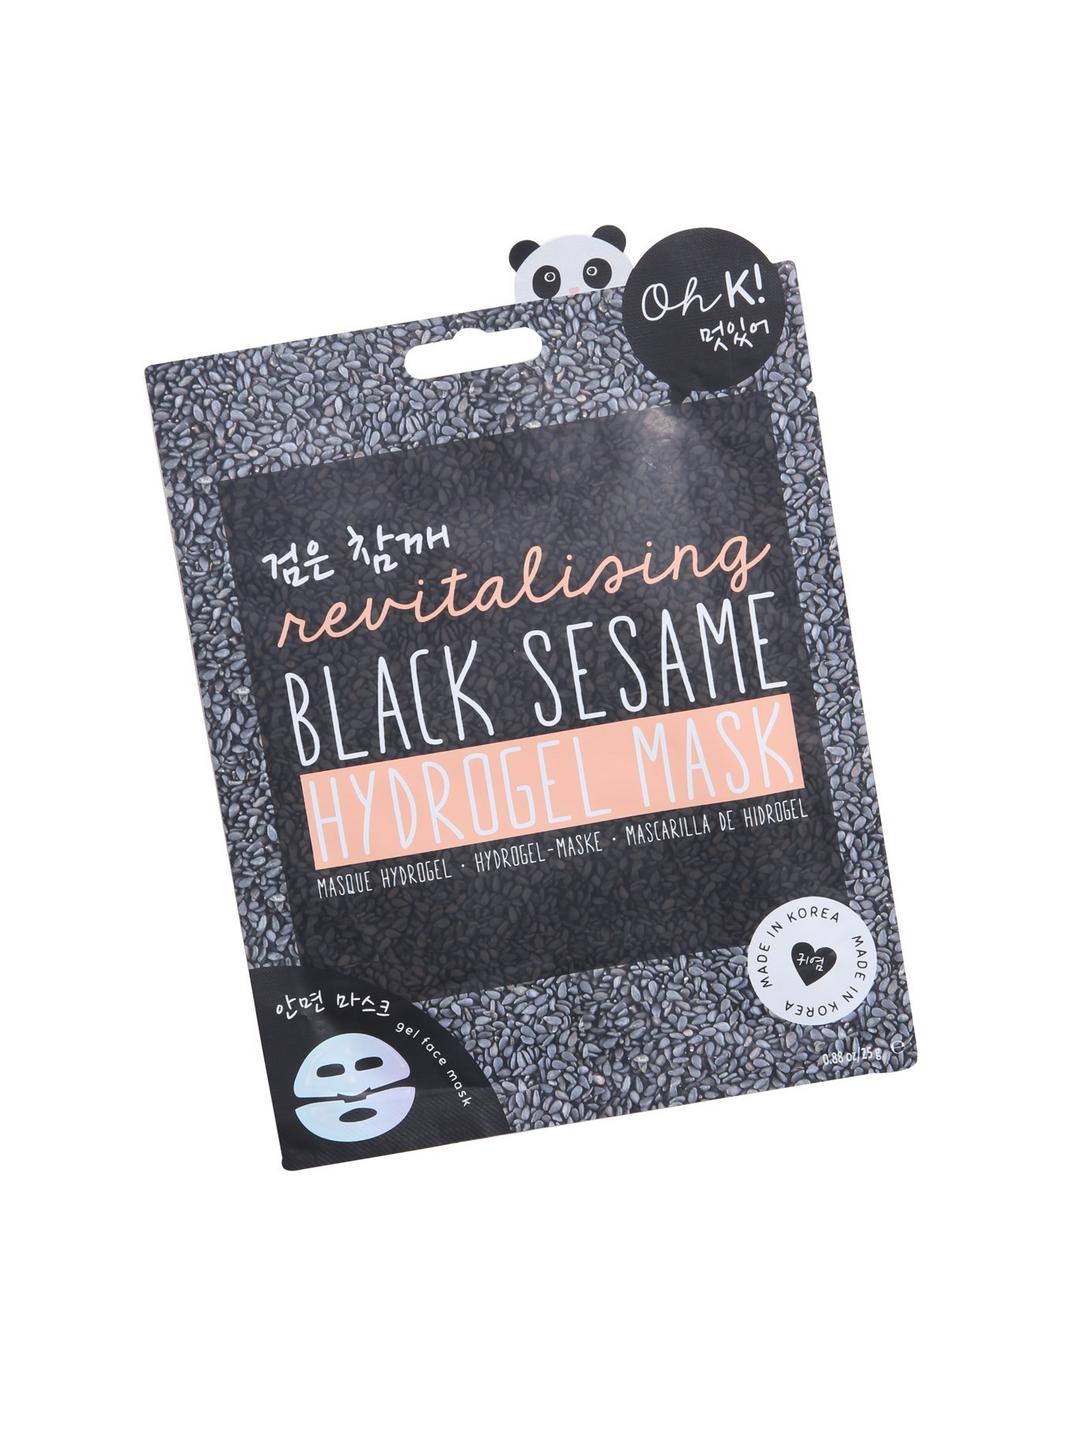 Oh K! Revitalizing Black Sesame Hydrogel Mask, , hi-res